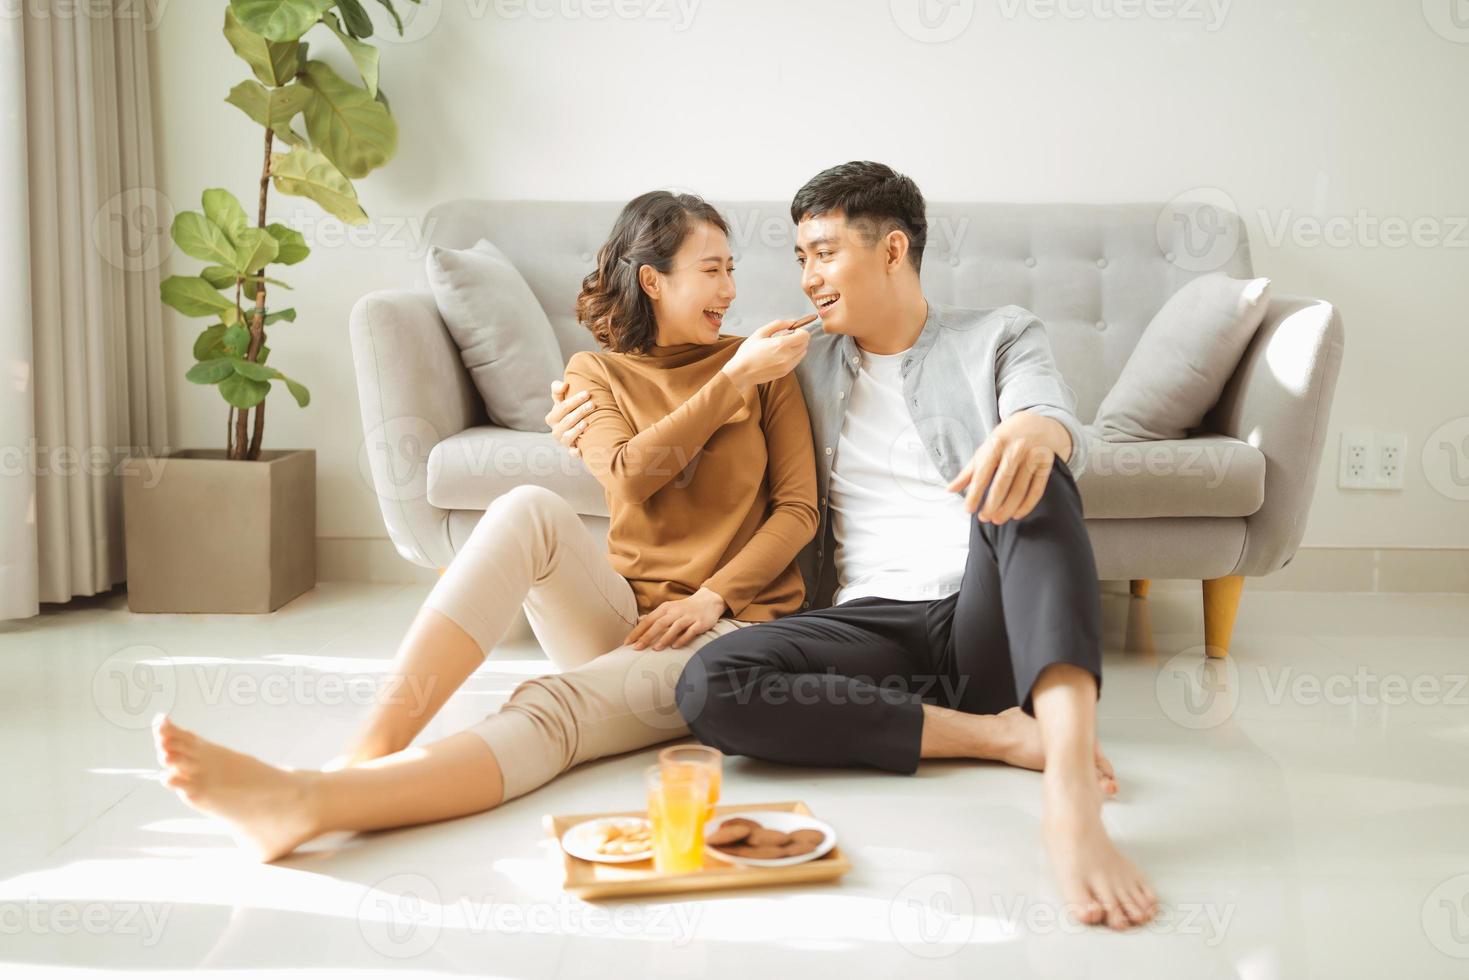 détente à la maison. heureux jeune homme et femme buvant une boisson chaude avec une pâte sucrée. ils sont assis à table sur le sol près du canapé et sourient photo